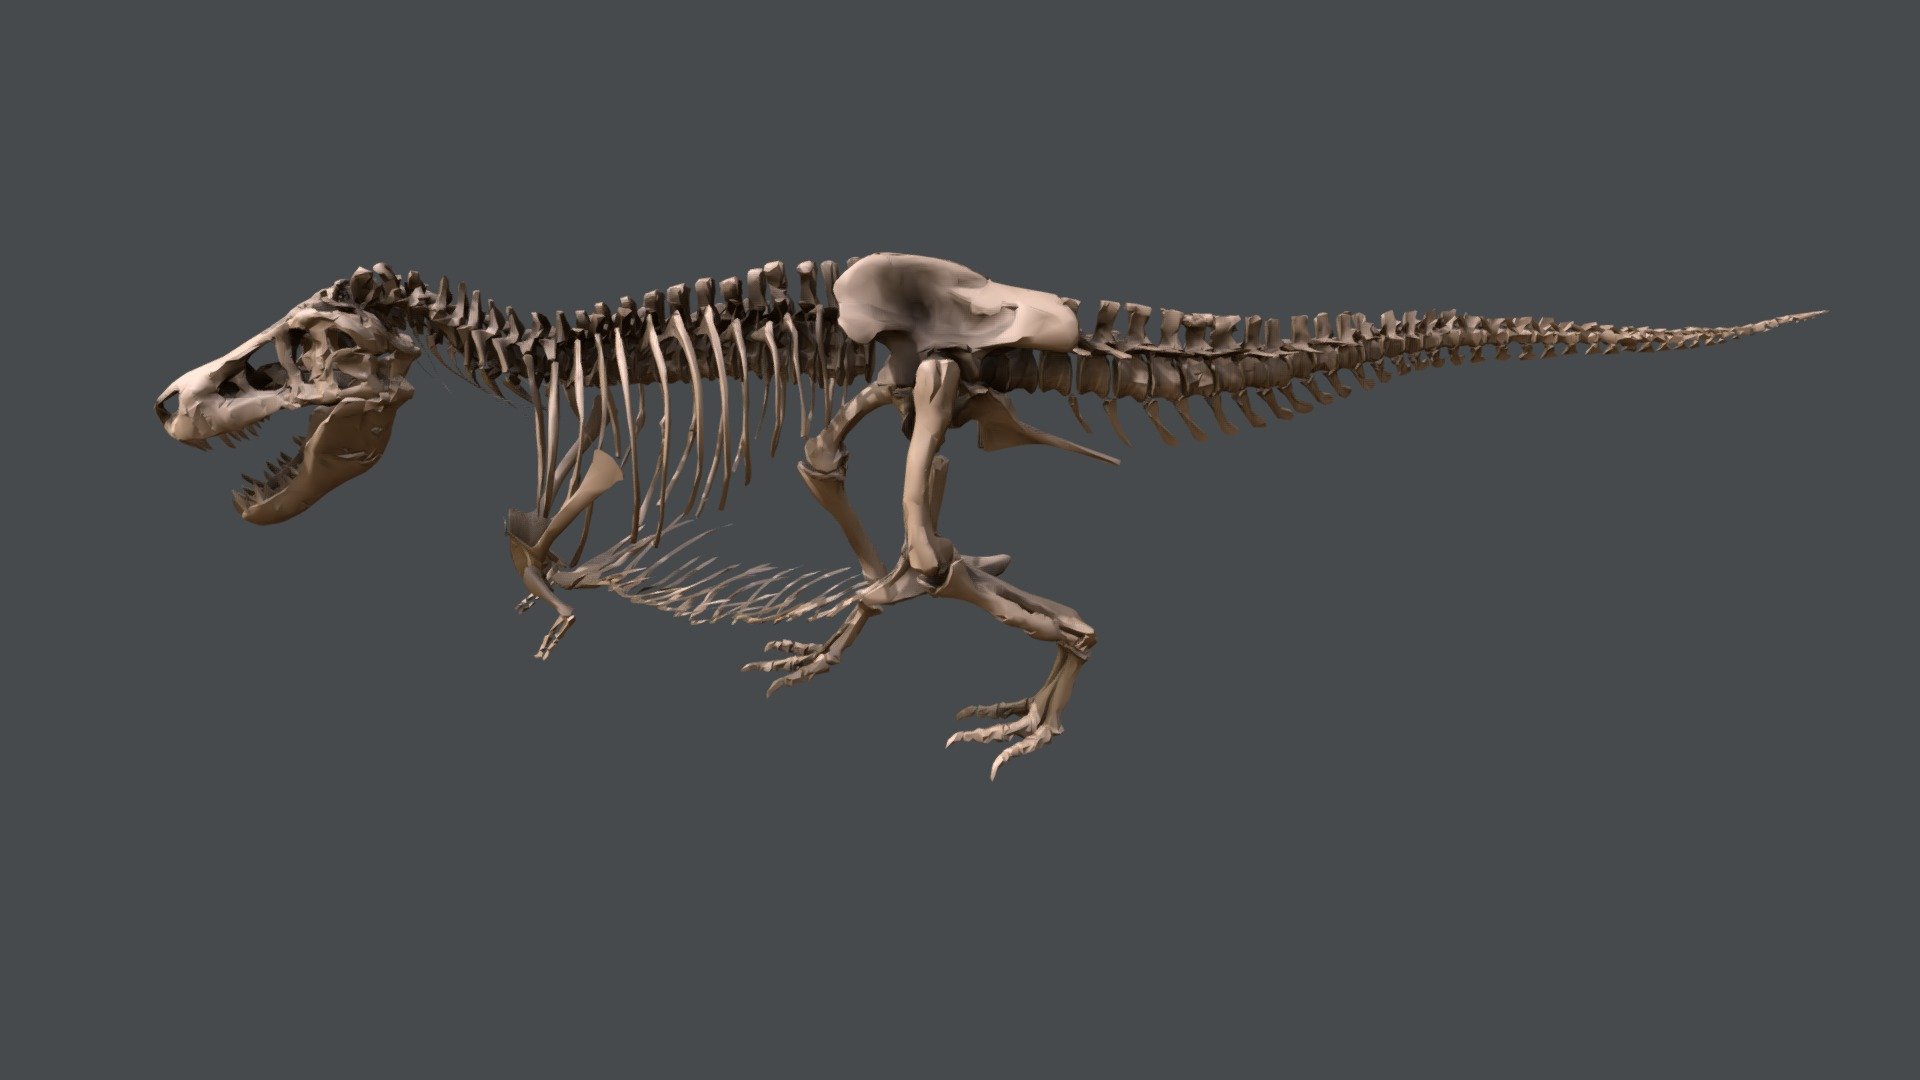 SUE es el esqueleto de rex Tyrannasaurus más grande y completo jamás encontrado. Obtenga más información sobre lo que podemos aprender de la vida de un animal al observar sus fósiles interactuando con el modelo anterior. Las respuestas a las preguntas están en el sitio web del Field Museum.

https://db.fieldmuseum.org/df4e79be-0726-4196-b745-d0717df2bd1c
PR2081 Field Museum of Natural History - SUE el T. rex - 3D model by fieldmuseumeducation 3d model